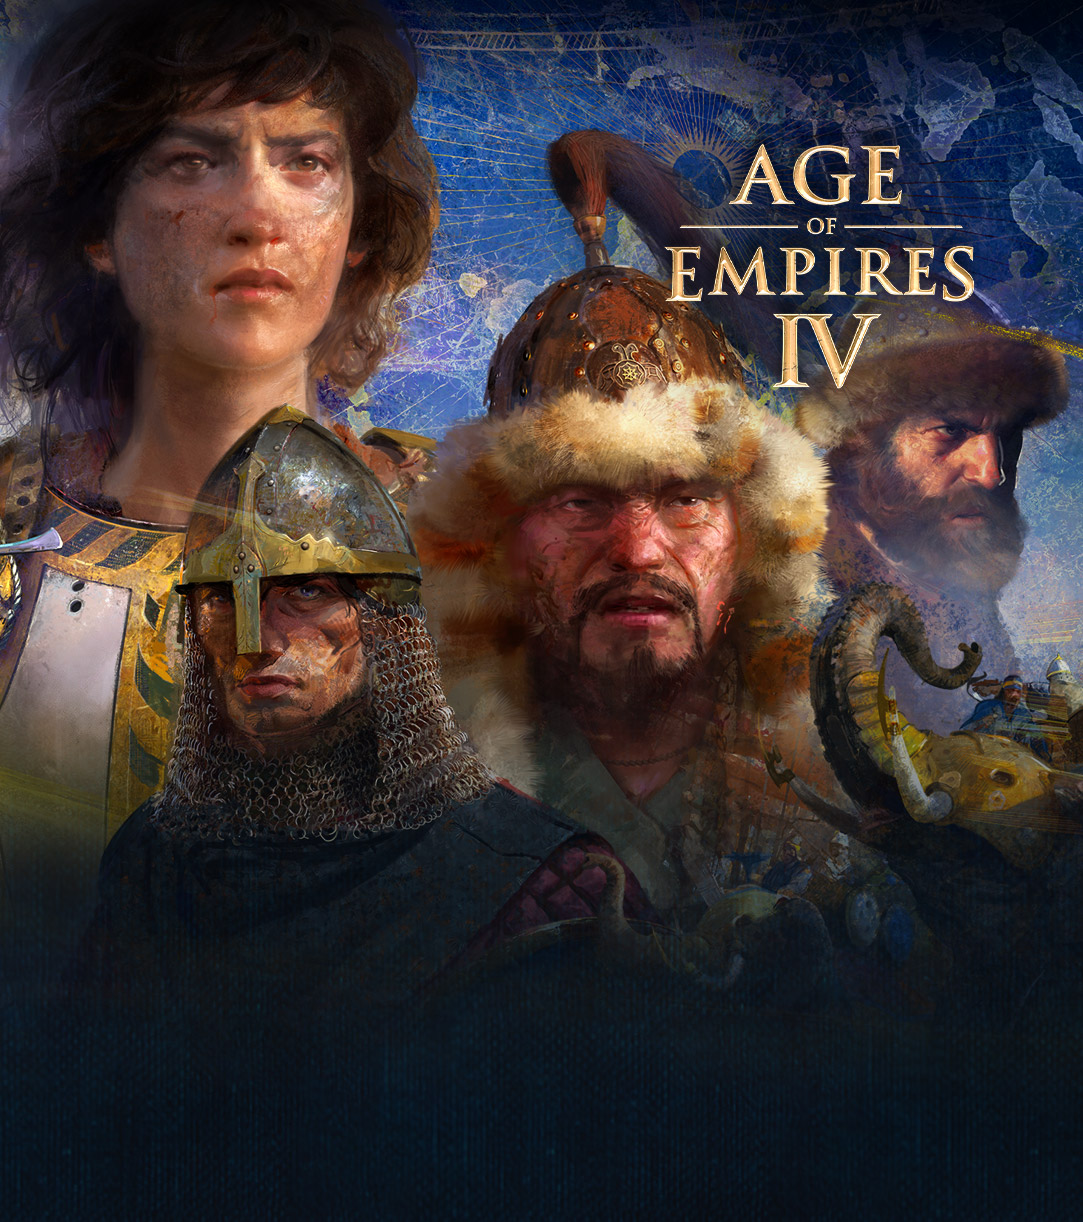 Age of Empires IV. Quatro personagens rodeadas por cenas de guerra, elefantes e homens a cavalo sobre um fundo com um mapa